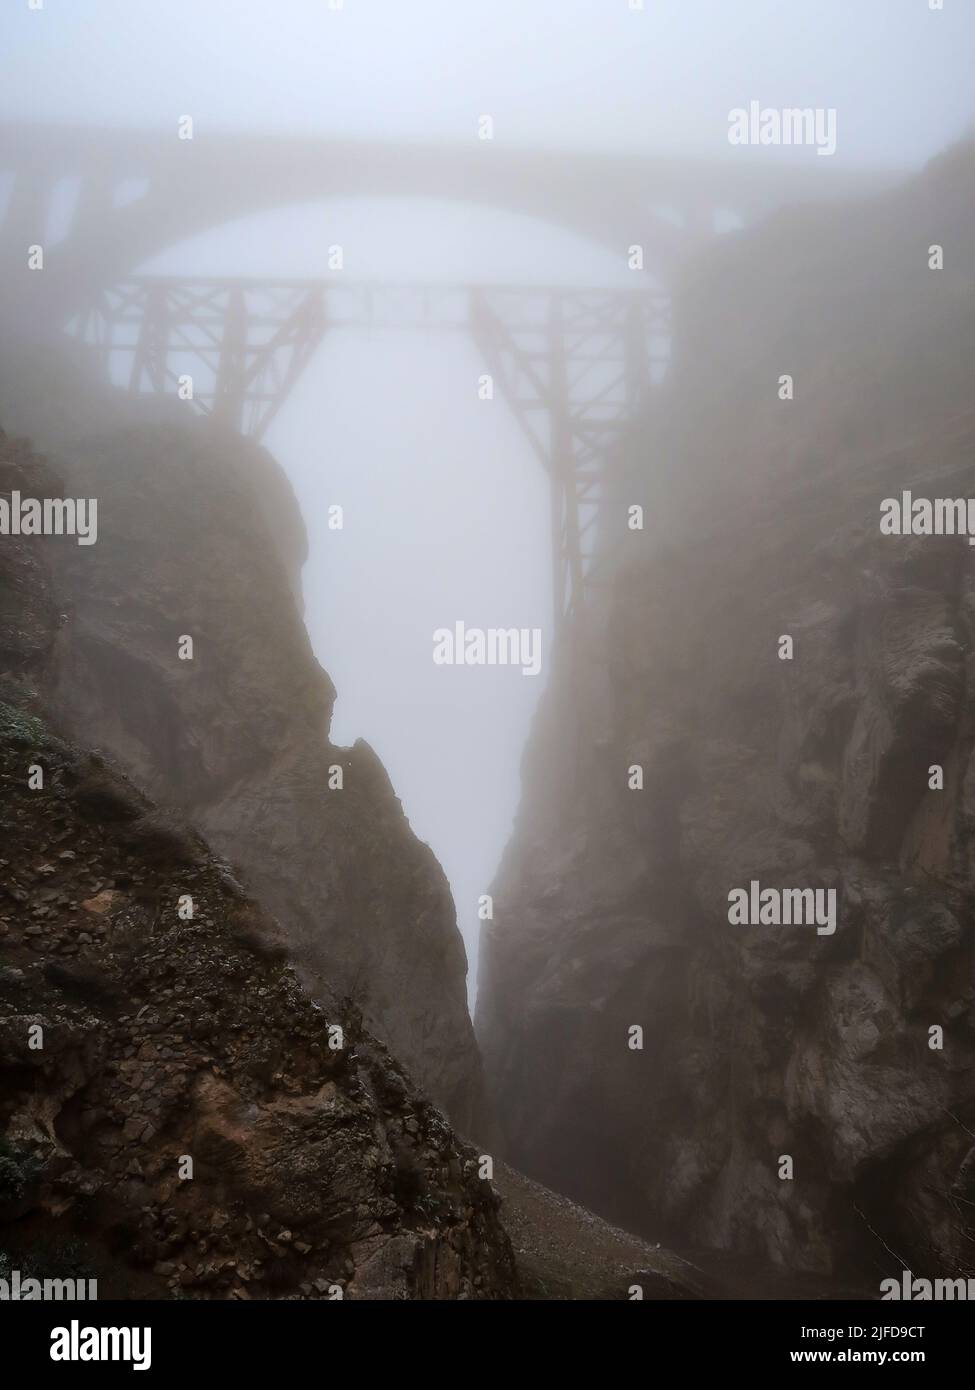 Veresk Bridge in the fog in the Iranian province of Mazandaran Stock Photo